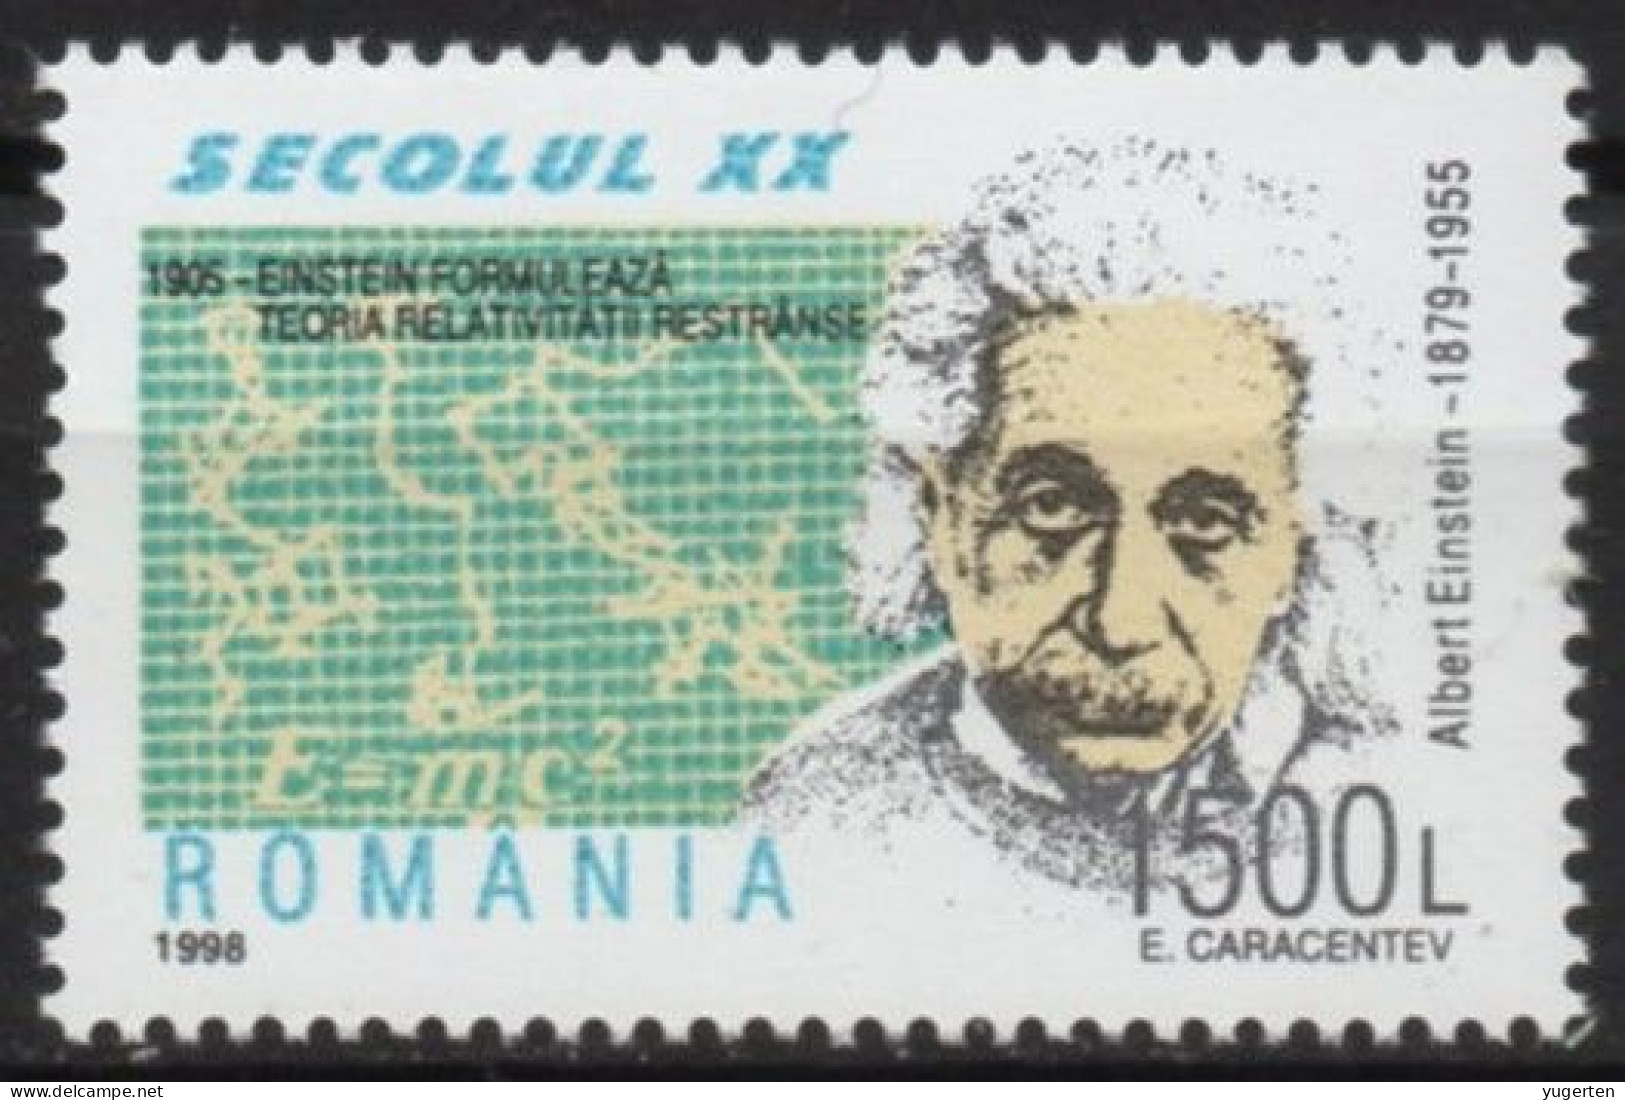 ROMANIA 1998 - 1v - MNH - Einstein Nobel Physics - Mathematics - Nuclear - Atoms Physik - Mathematik - Atome - Albert Einstein